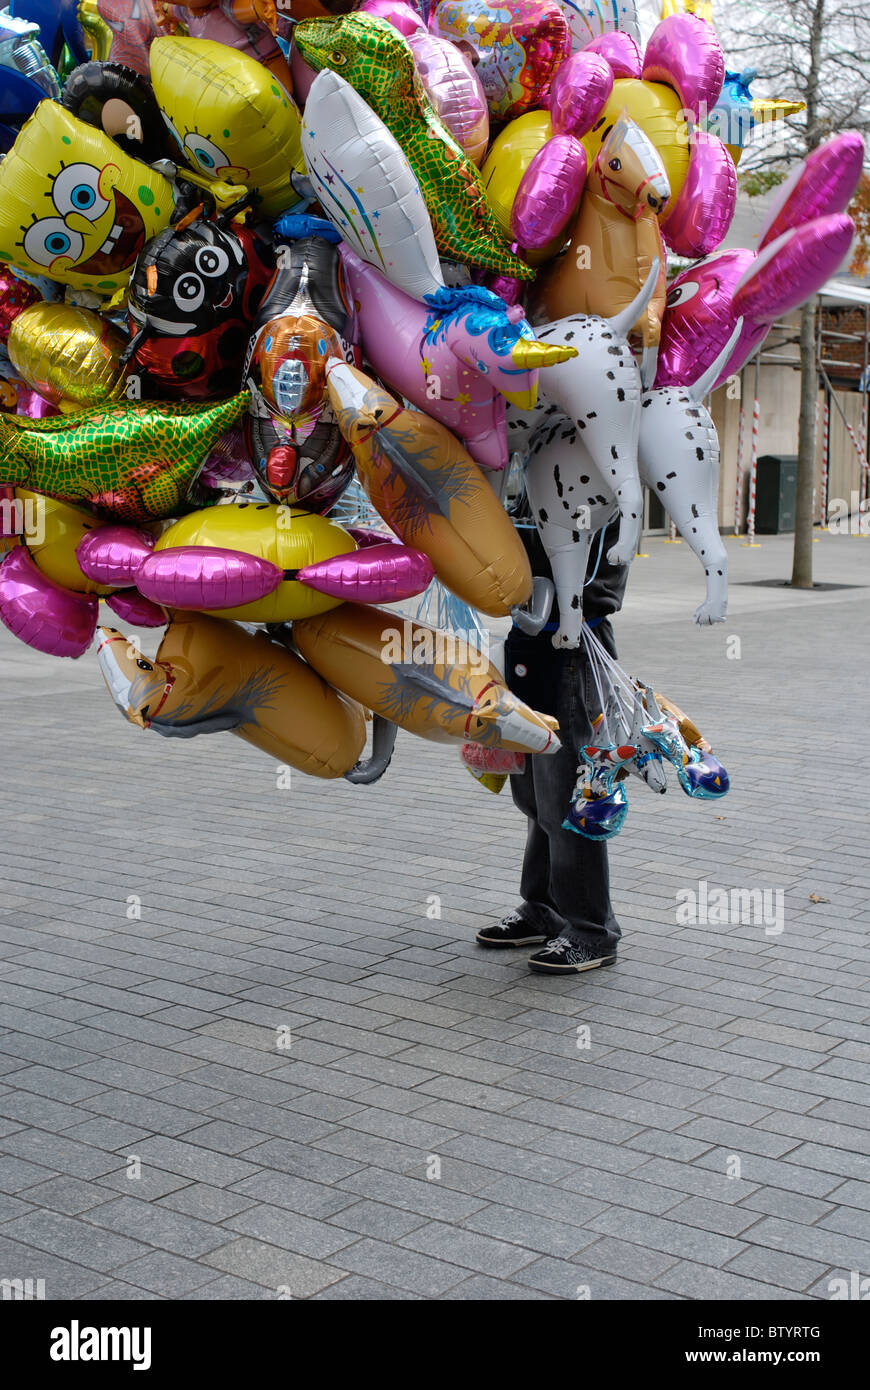 Ballon-Verkäufer verdeckt durch seine waren. Stockfoto